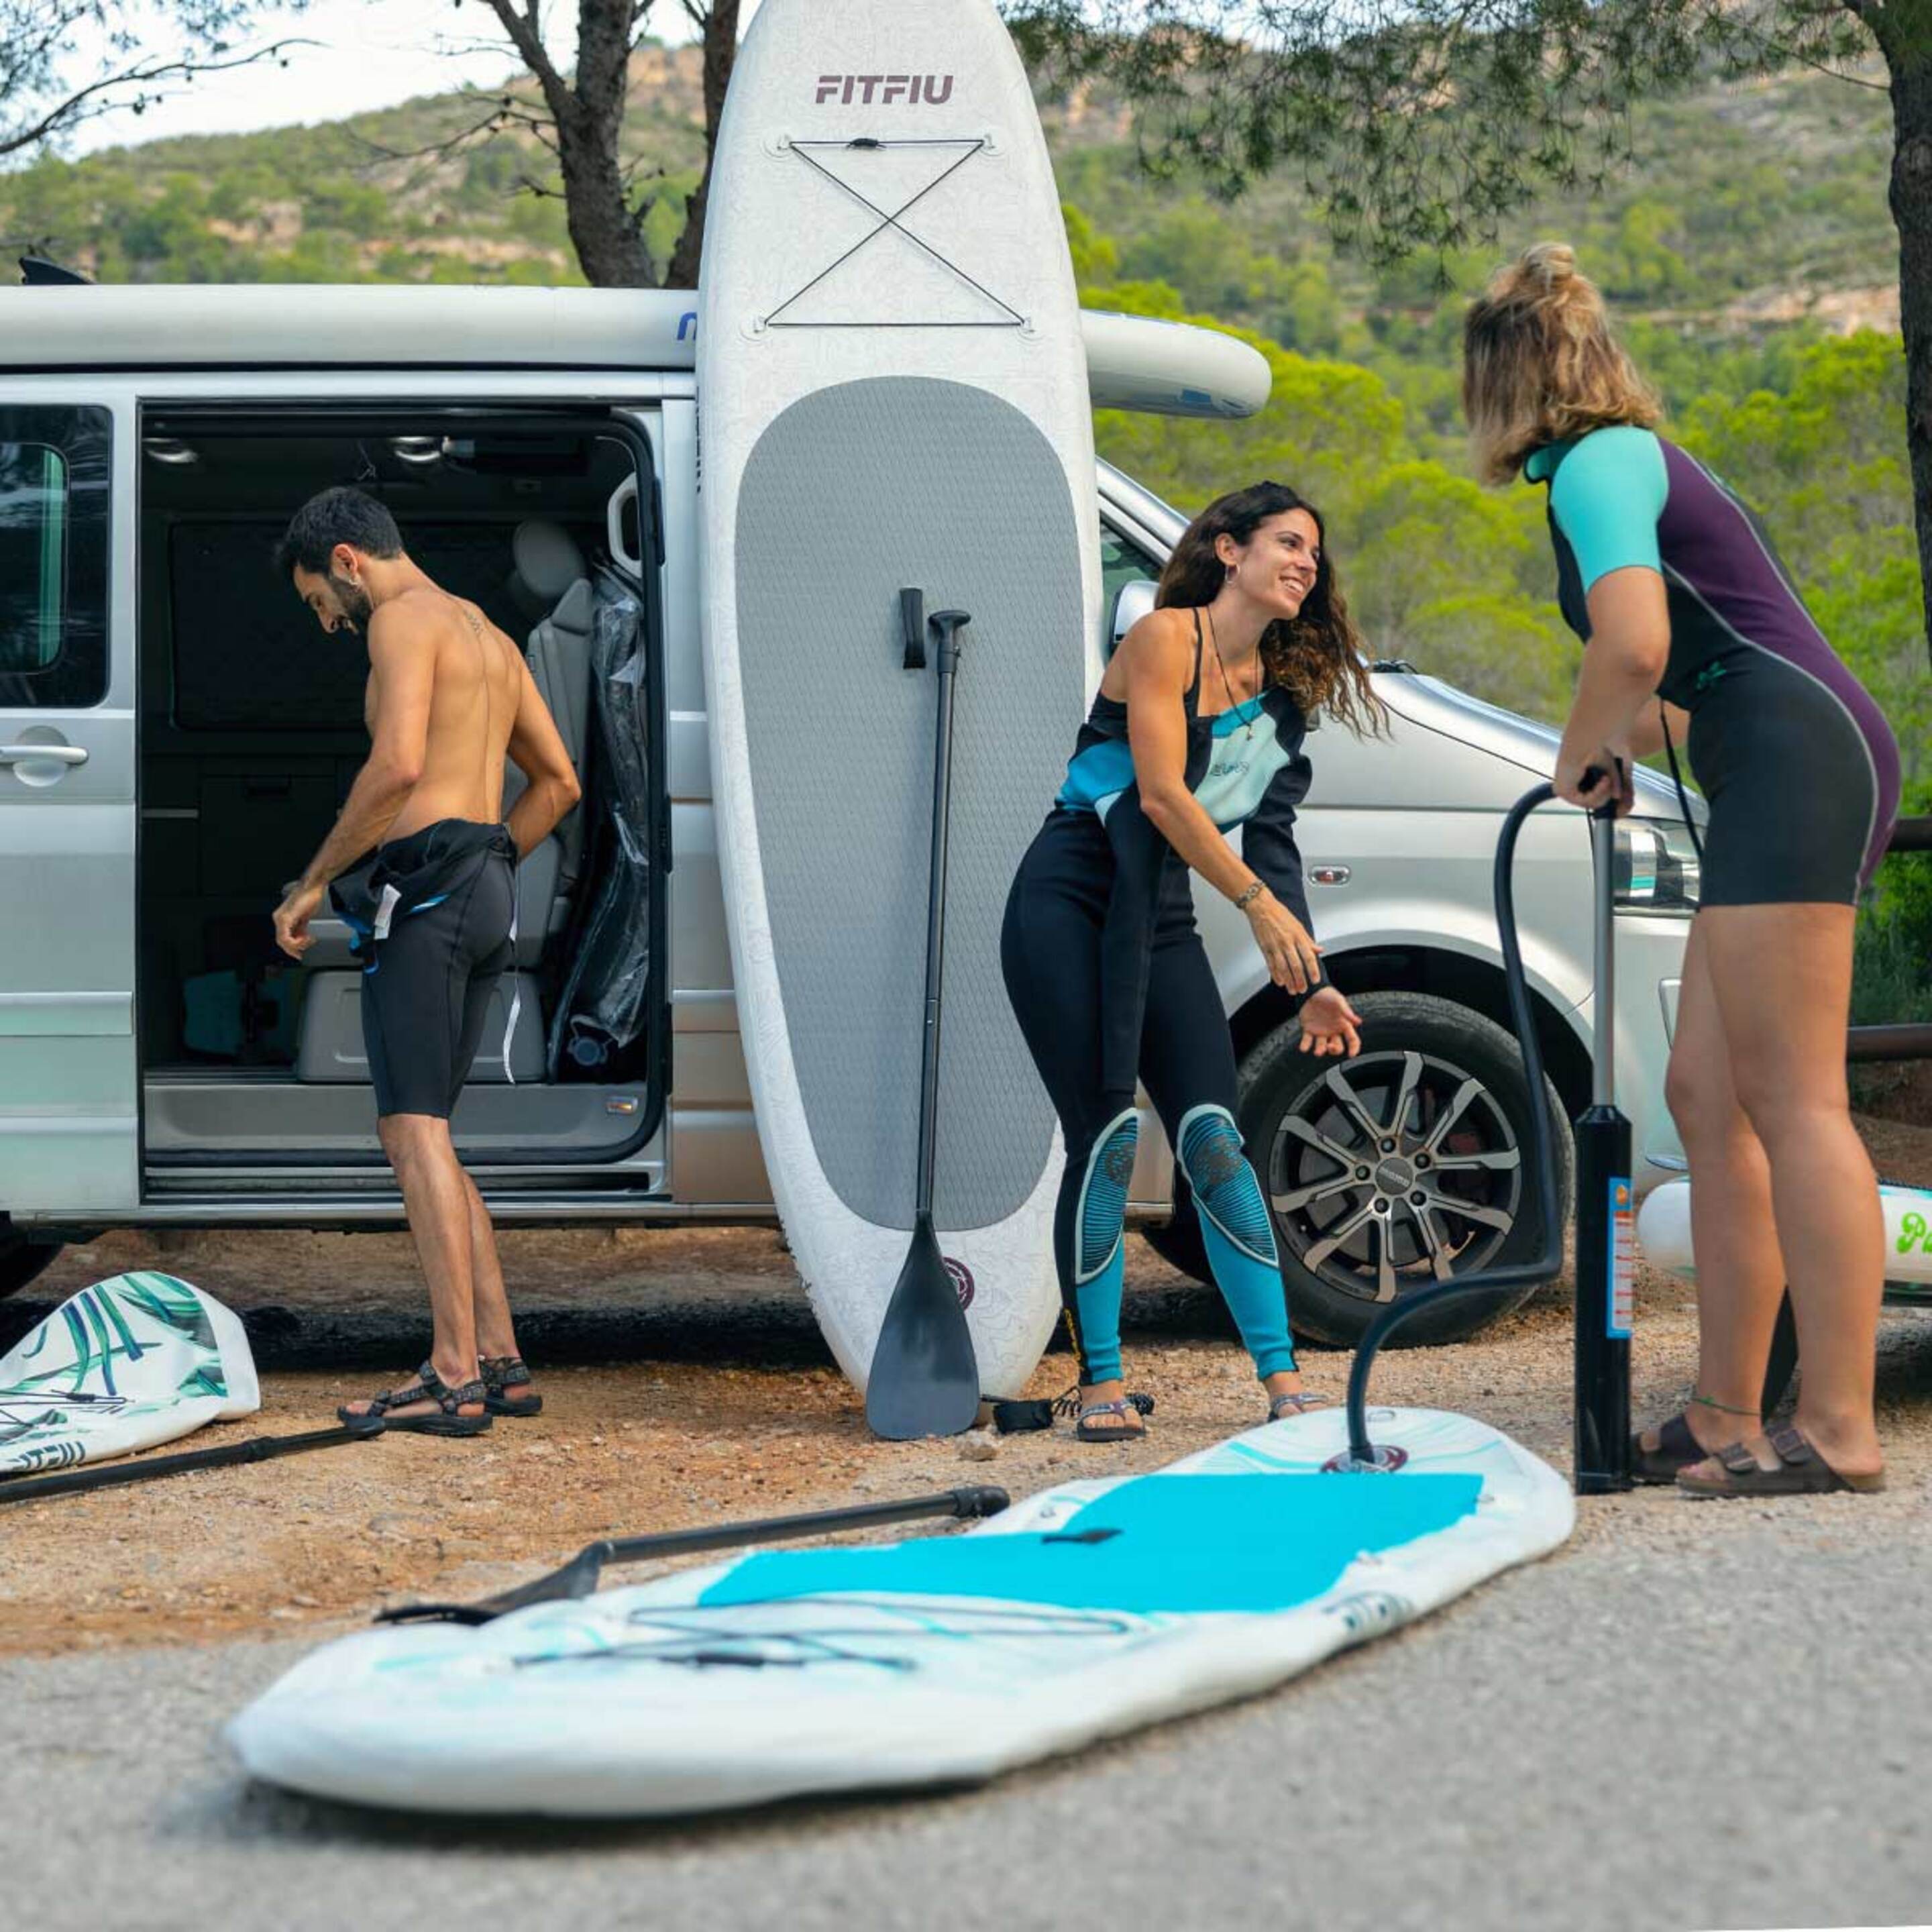 Tabla Paddle Surf All Round Hinchable Fitfiu Con Accesorios Y Diseño Marino